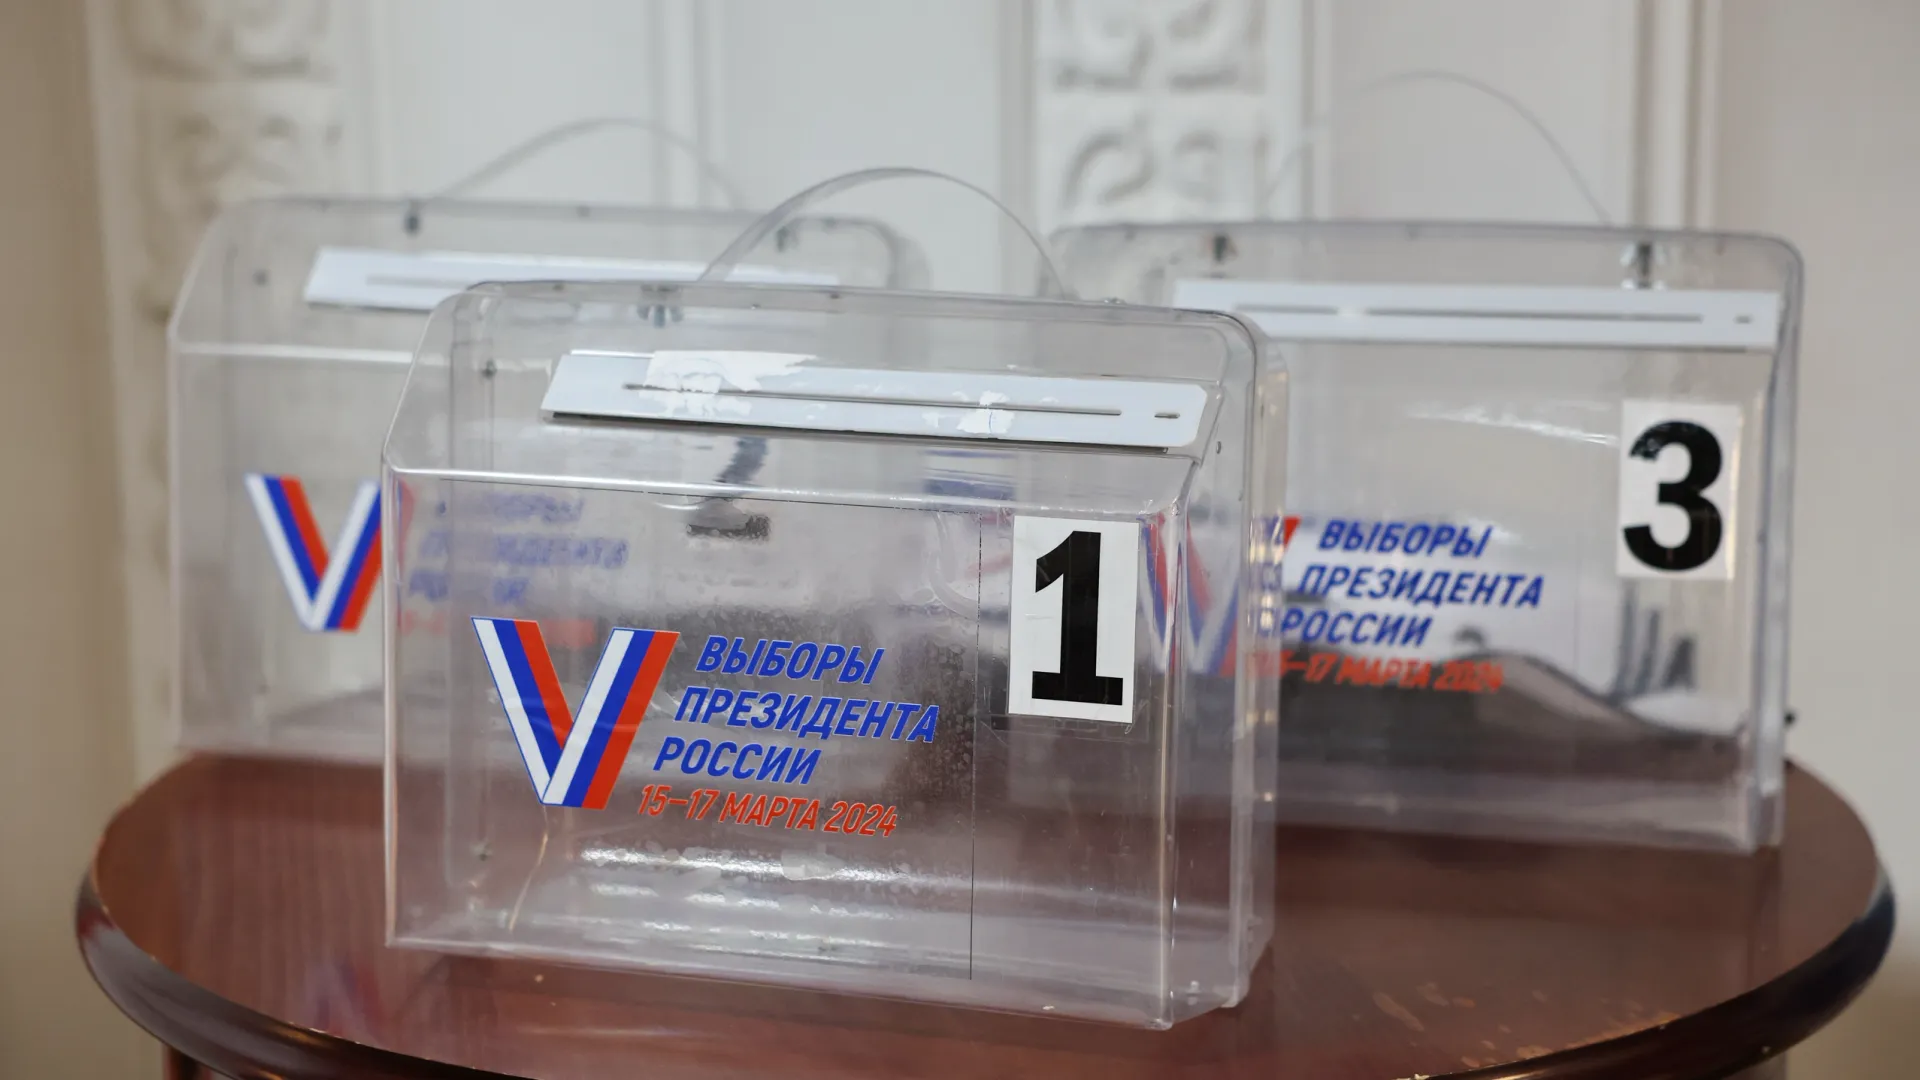 Избирком организует выездное голосование для ямальцев, которые не могут посетить избирательные участки. Фото: Андрей Ткачёв / "Ямал-Медиа"